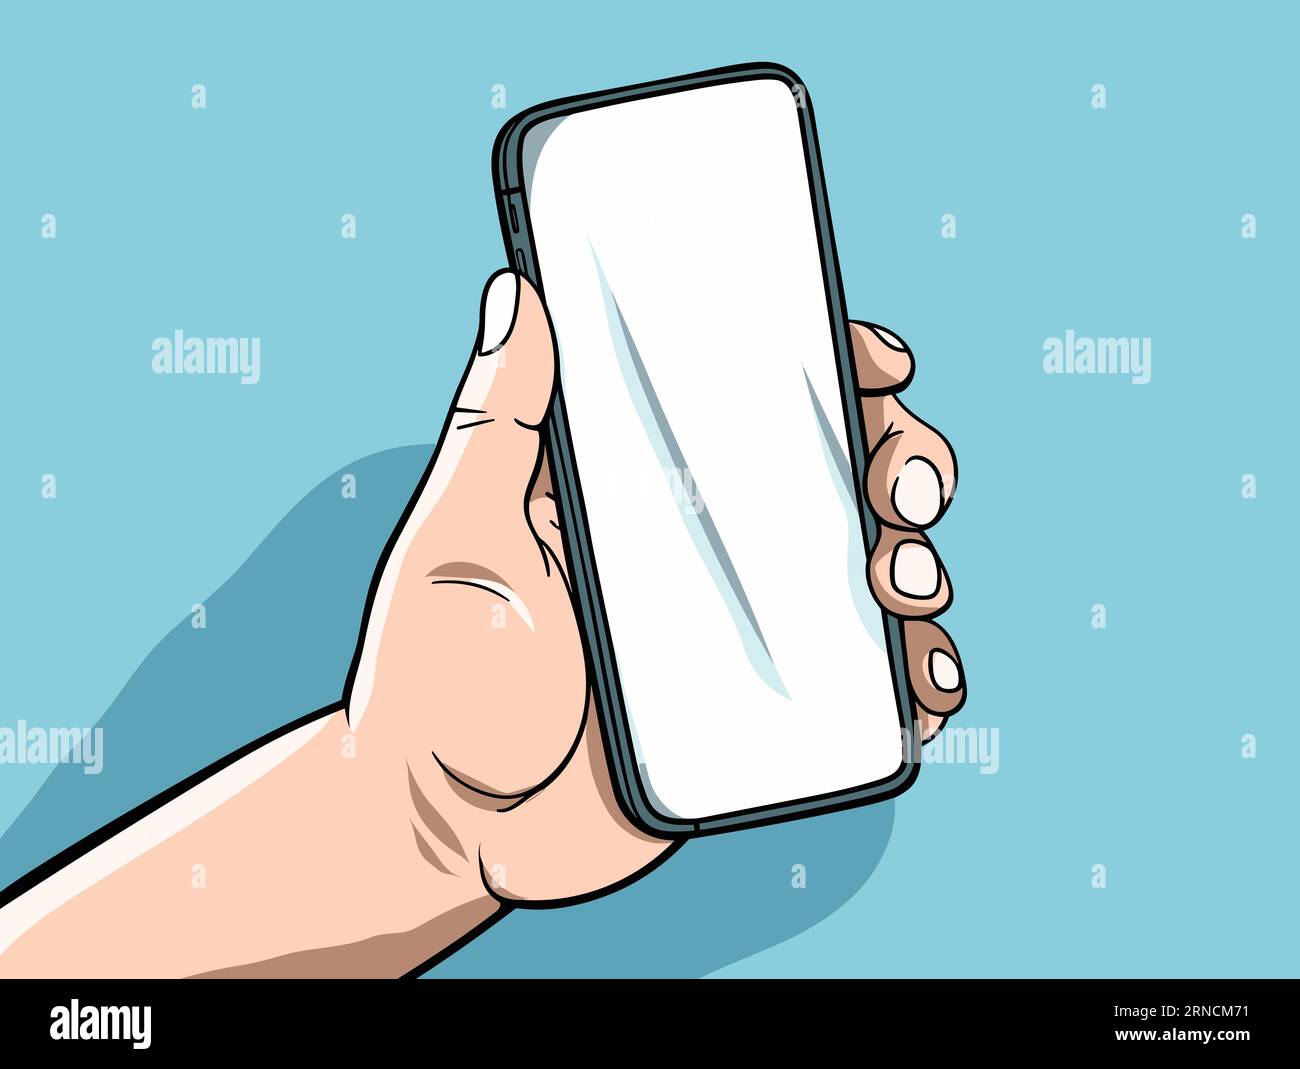 Hand Hält Smartphone-Bildschirm In Transparentem Fenster, Im Stil Der Pop Art Cartoonish Illustration, Hellblau Und Weiß, Glatte Oberflächen Stock Vektor